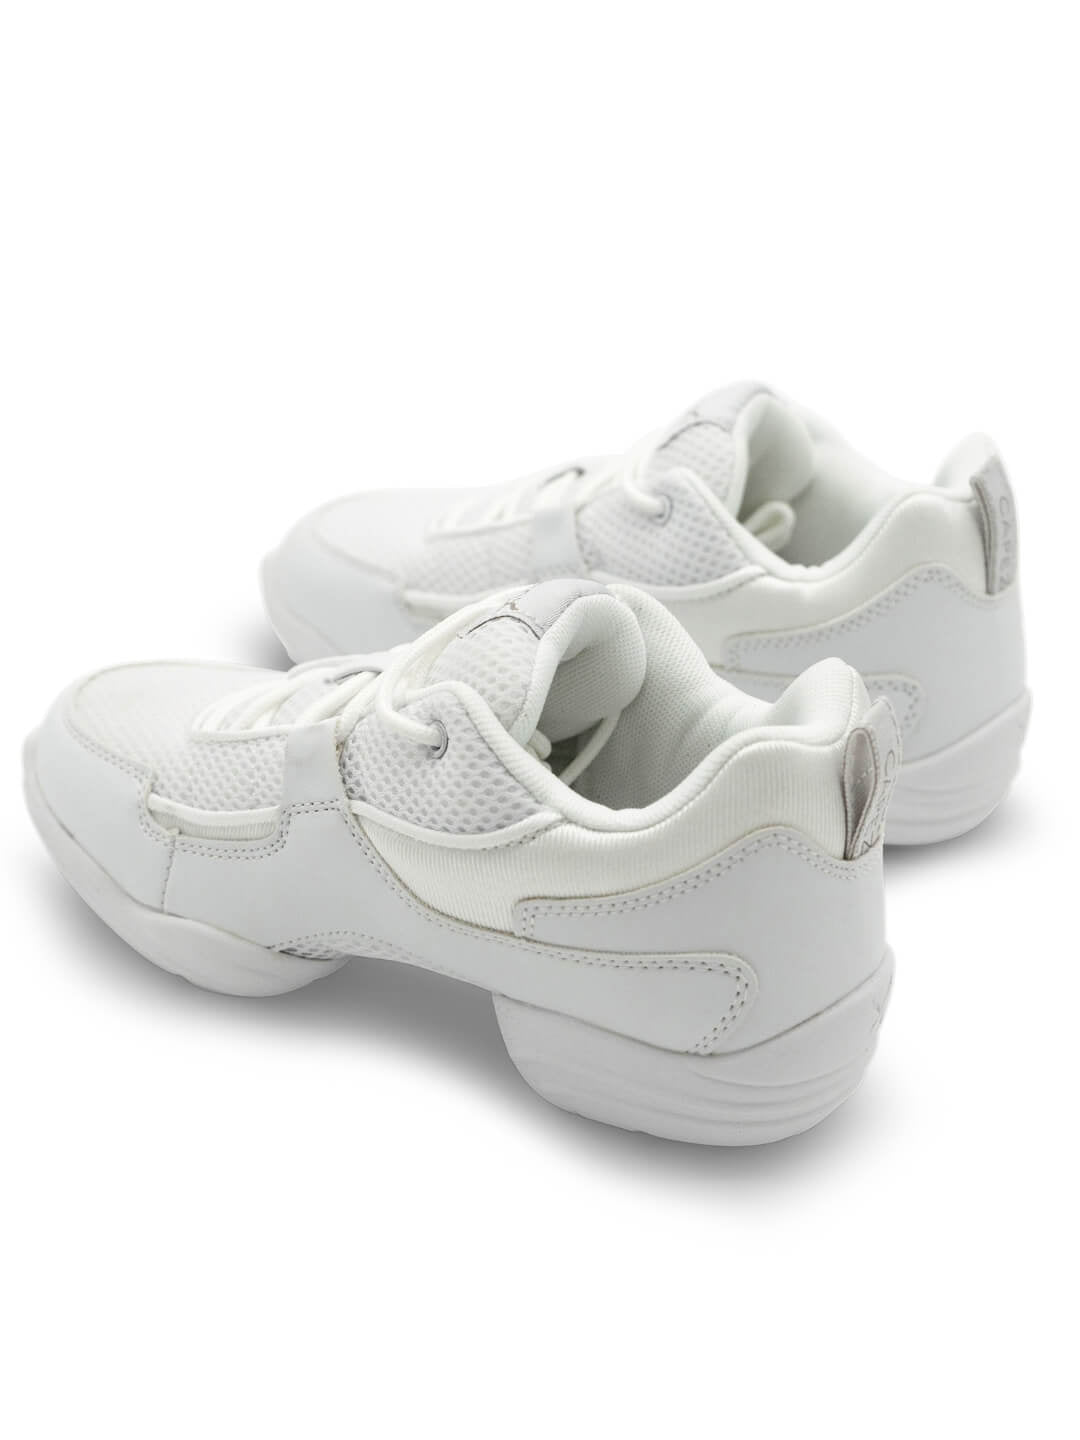 Fierce Dansneaker - White